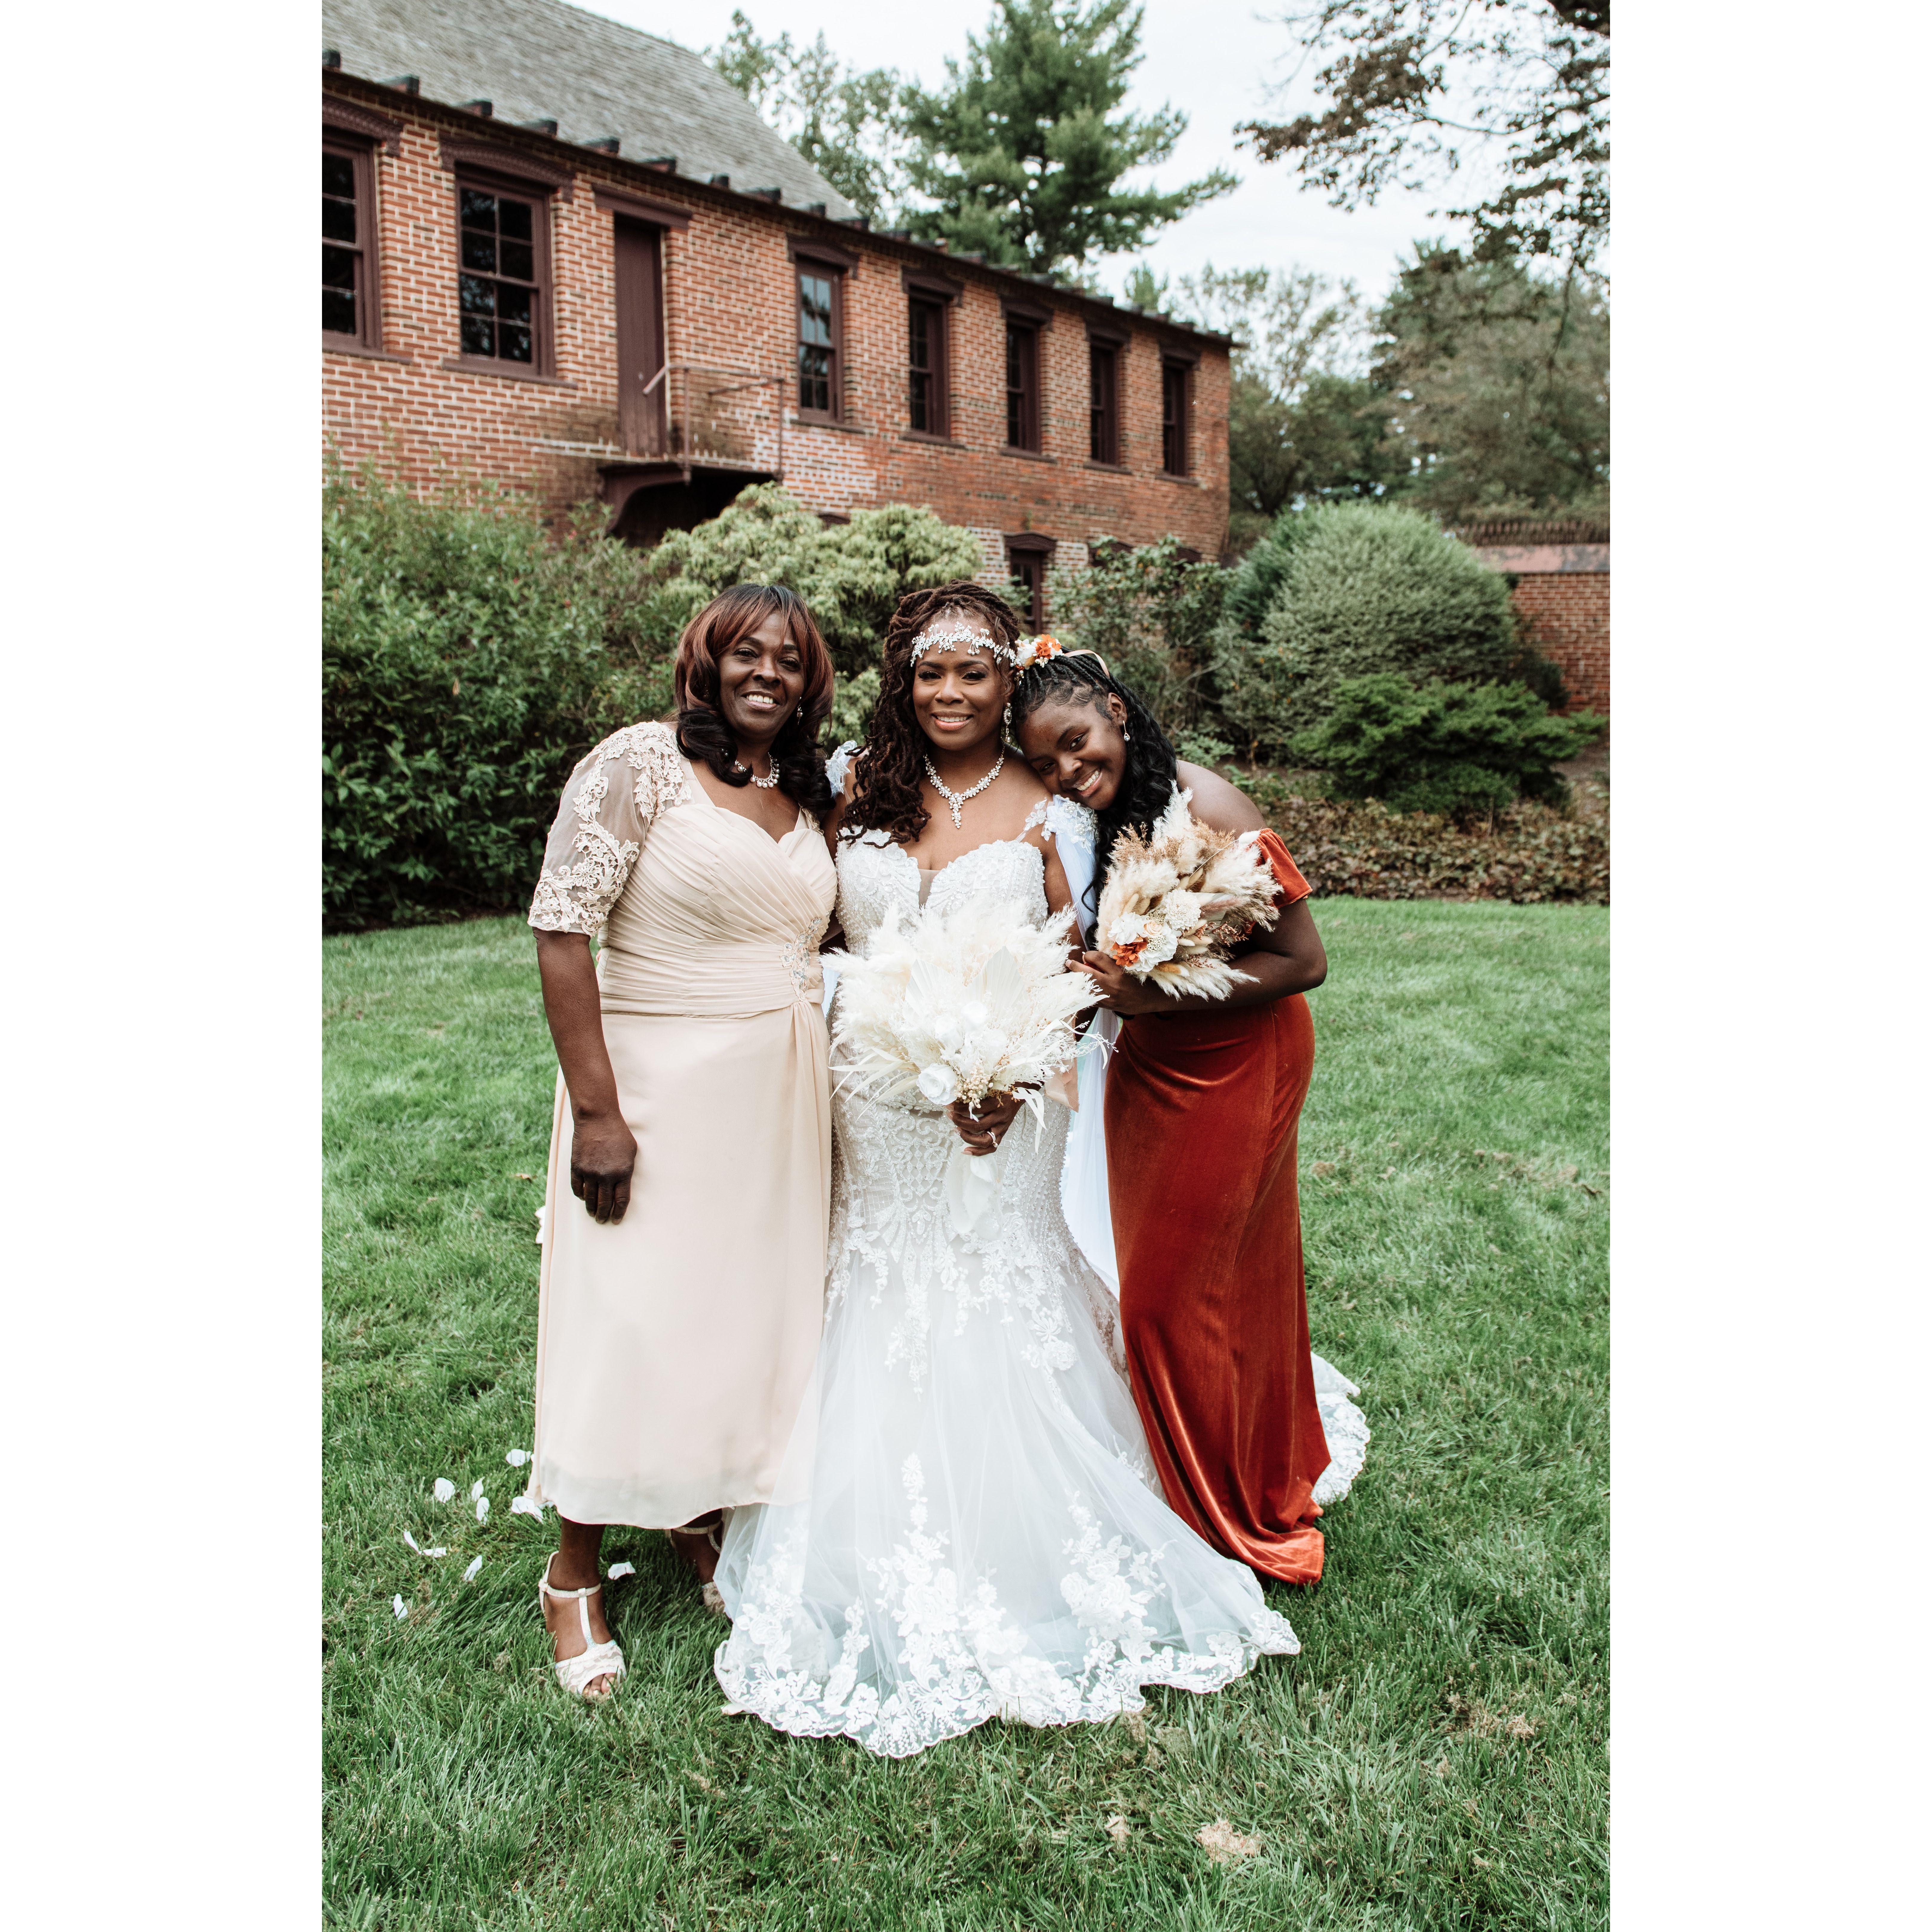 Wanda, Tawanna & Naomi-Joy ~
Bride's Mother and Daughter